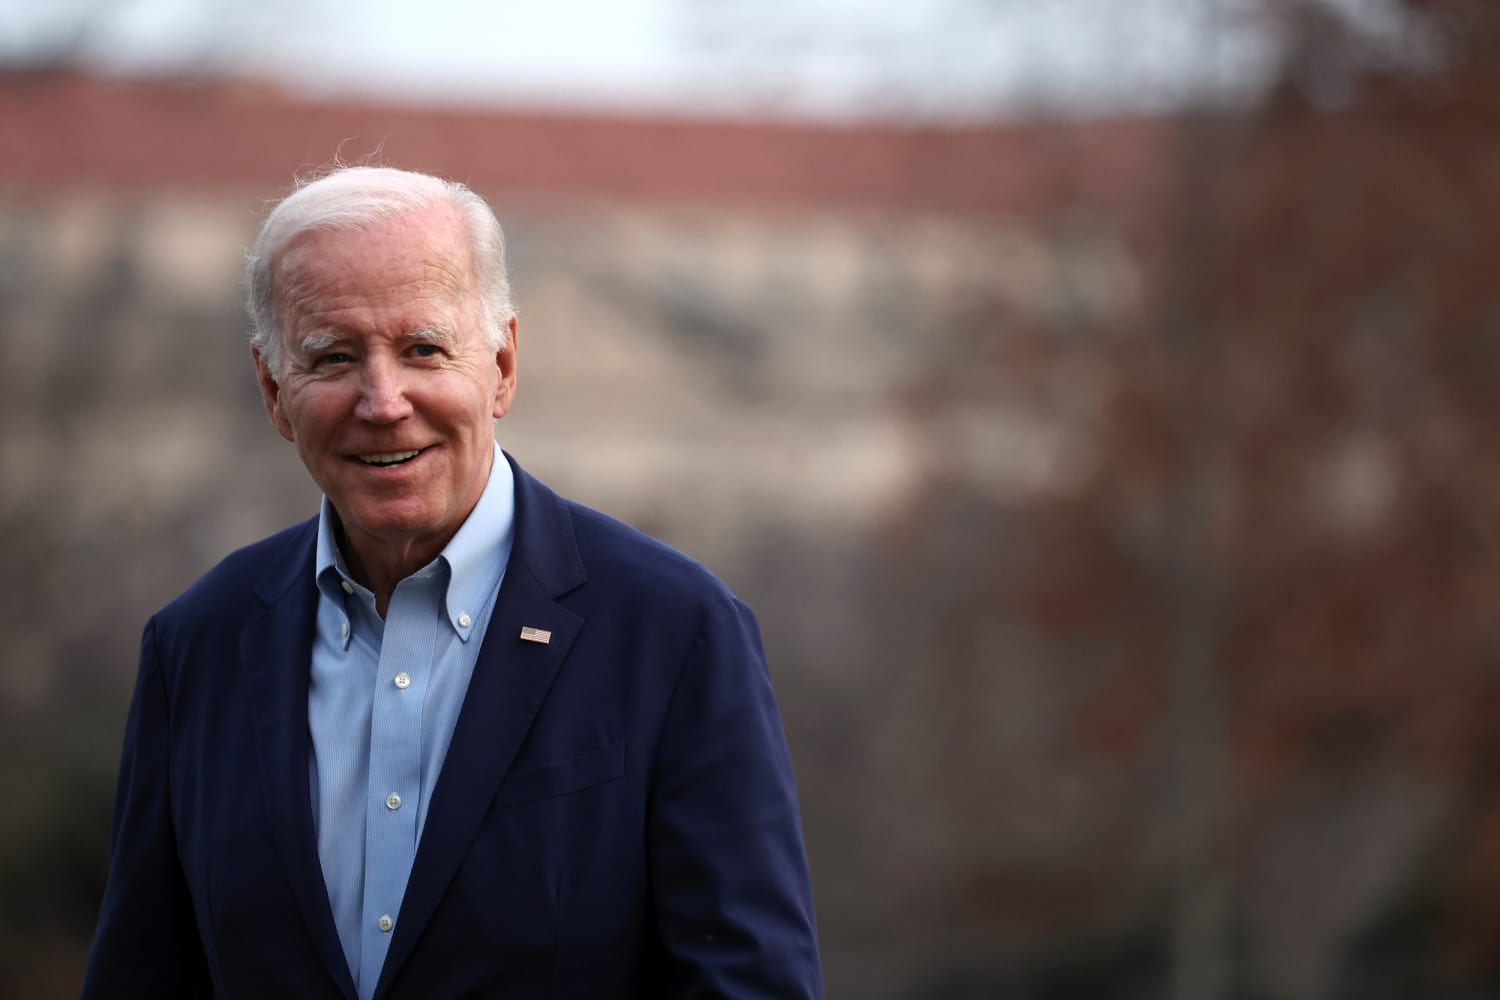 Biden tells Al Roker: ‘I plan on running’